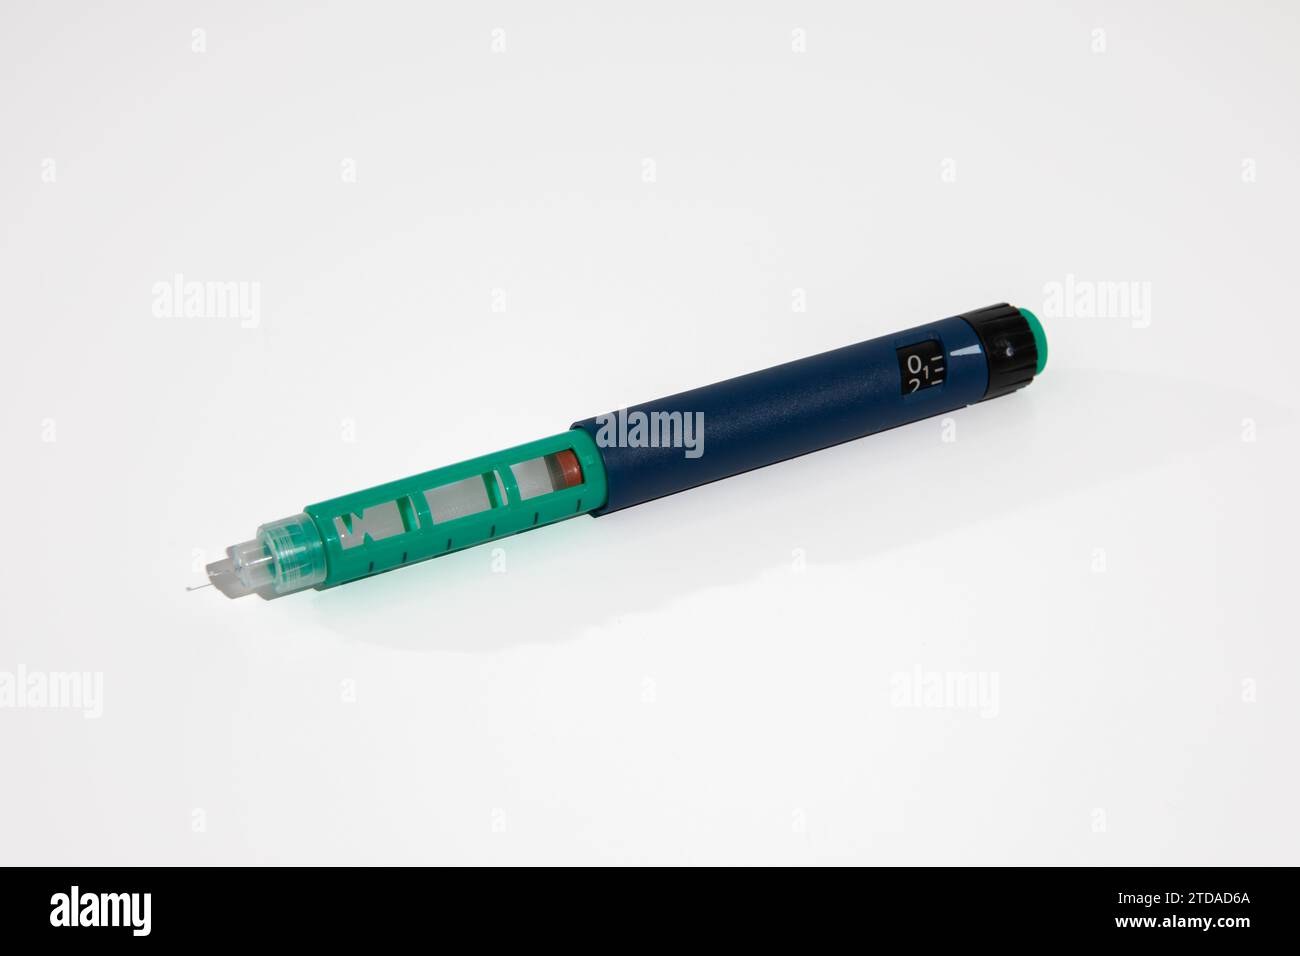 Penna per insulina con punta dell'ago isolata su sfondo bianco. I dispositivi medici sono usati per l'autoiniezione per il trattamento della malattia del diabete. Foto Stock